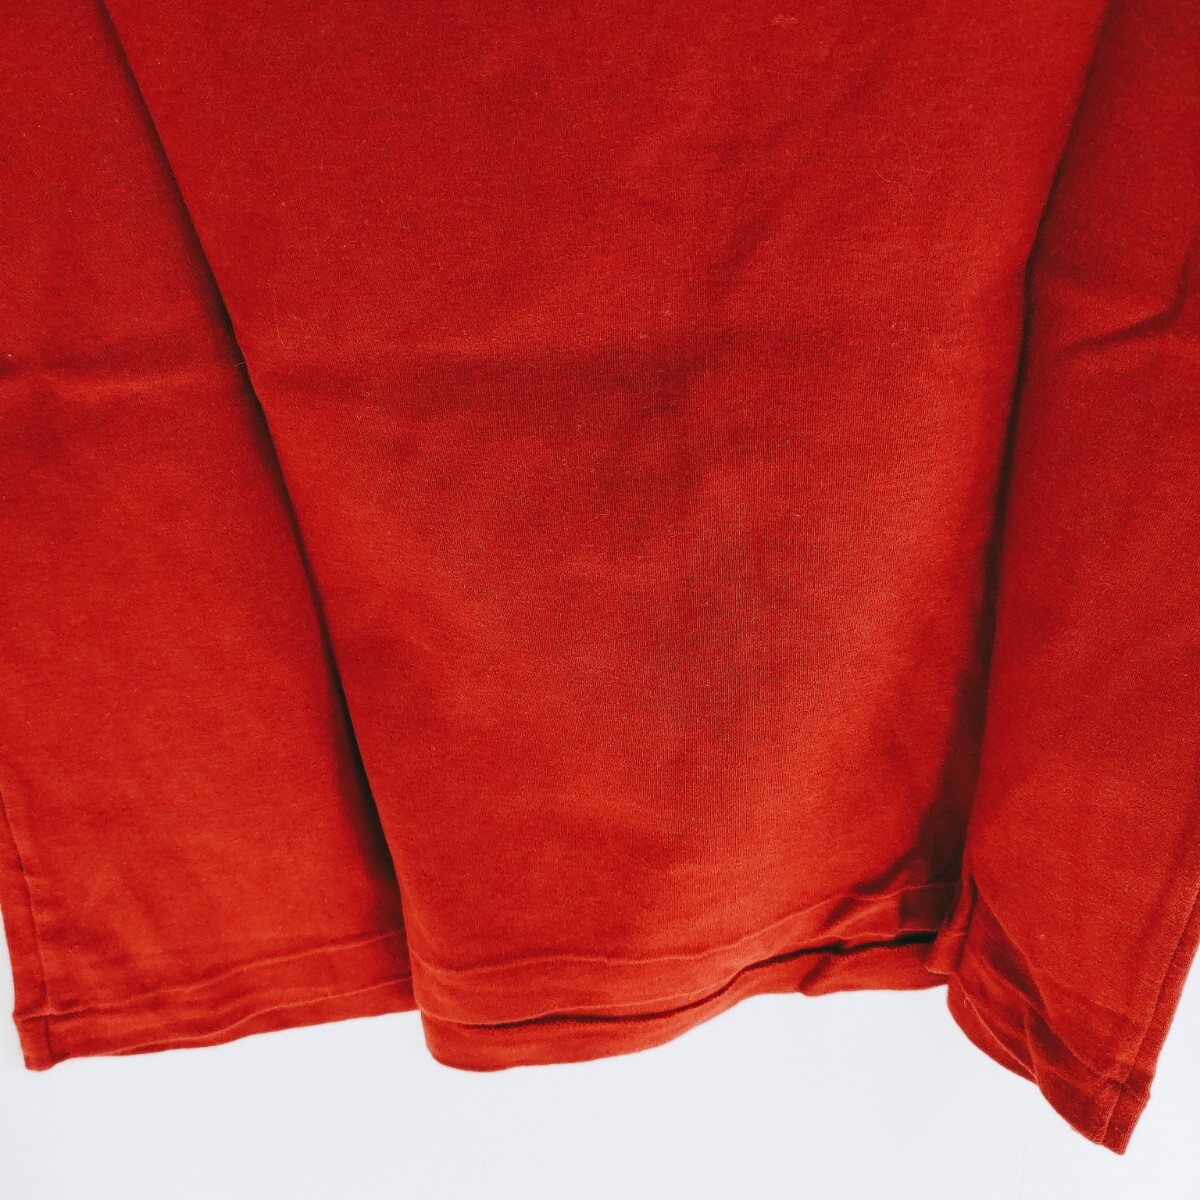 【美品】INGEBORG インゲボルグ 半袖シャツ サイズL リボン 赤 レッド 半袖Tシャツ 上着 トップス 衣類 レトロ 服 カットソー A-14_画像6